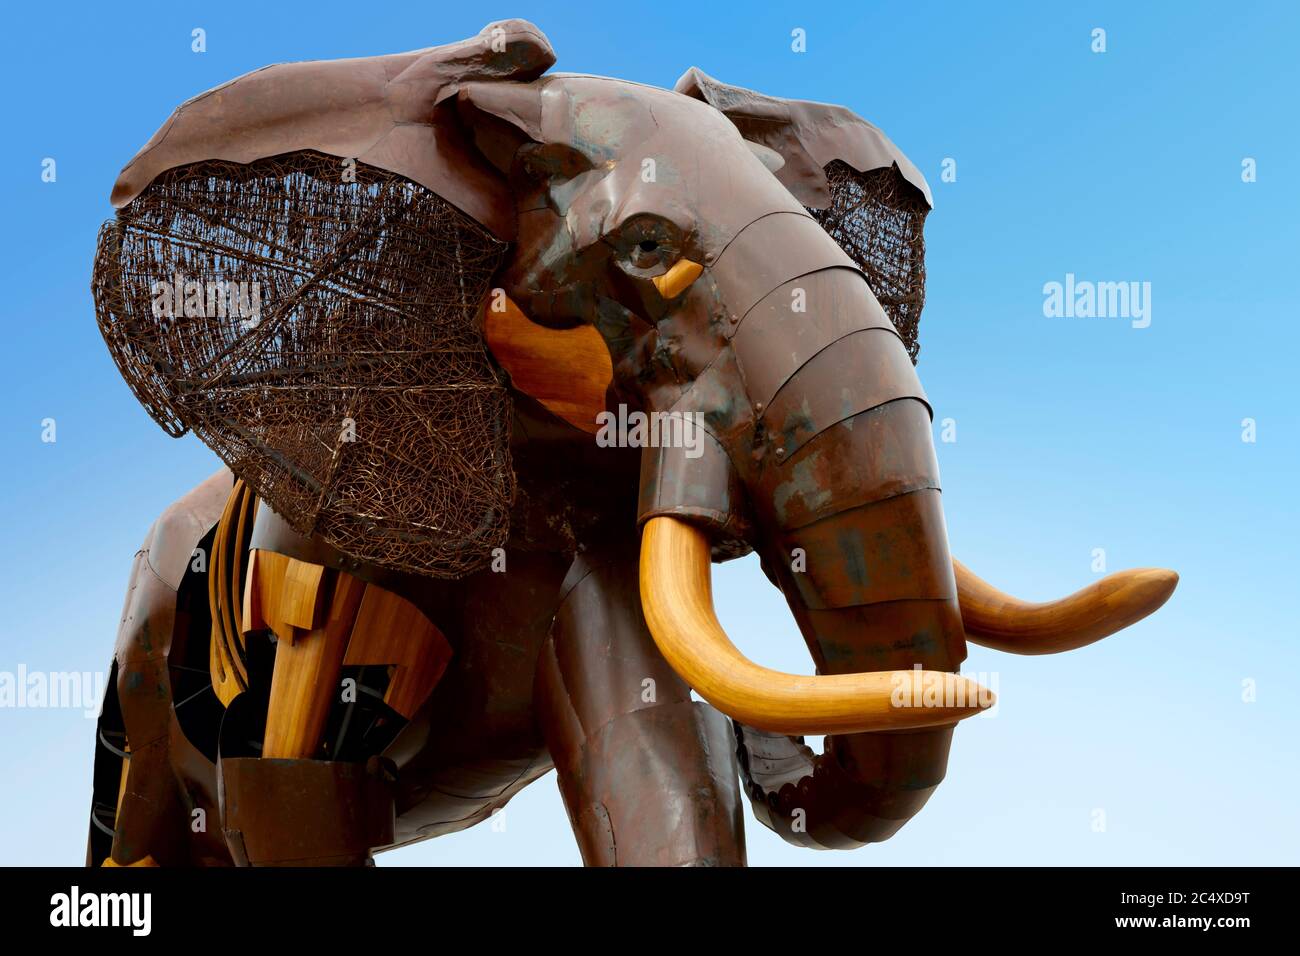 Escultura de elefante africano diseñada por Fernando González sobre fondo azul, Bioparc, Valencia, España. Foto de stock